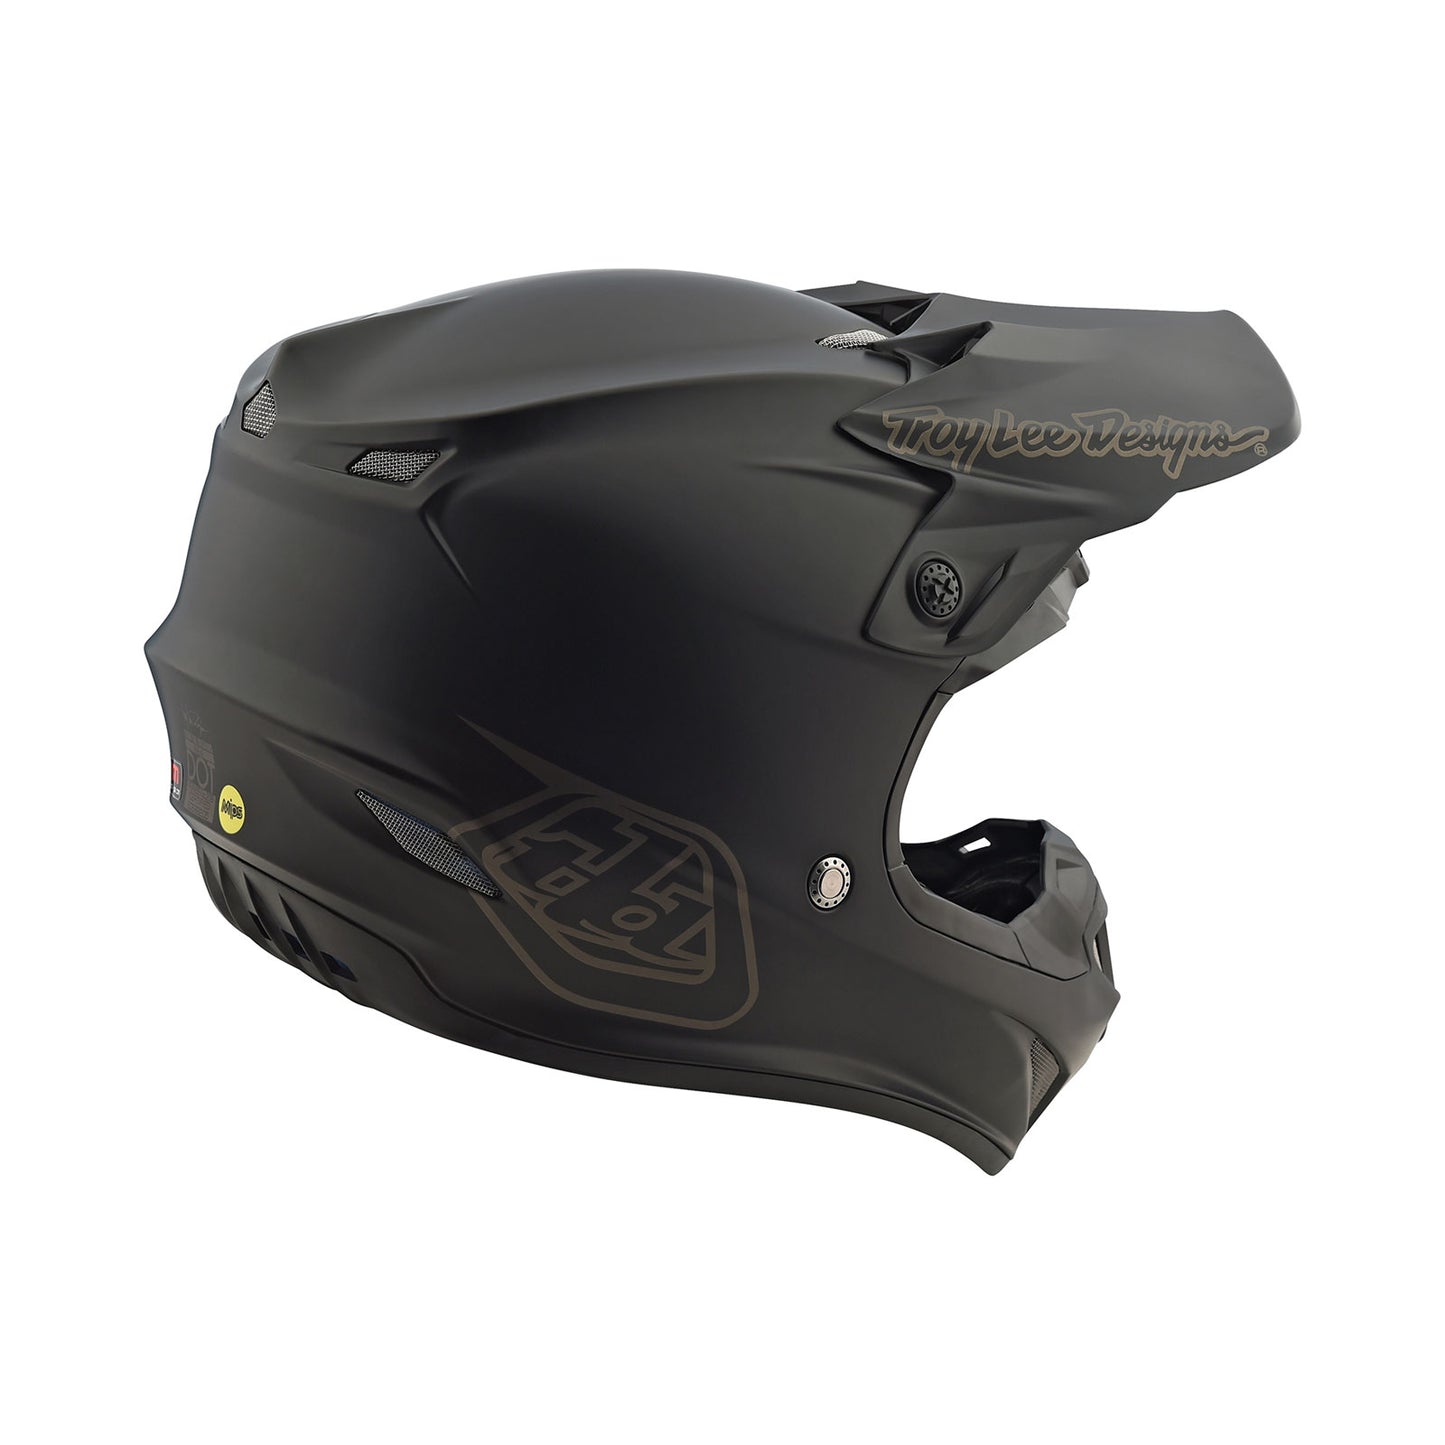 SE4 Polyacrylite Helmet Mono Black